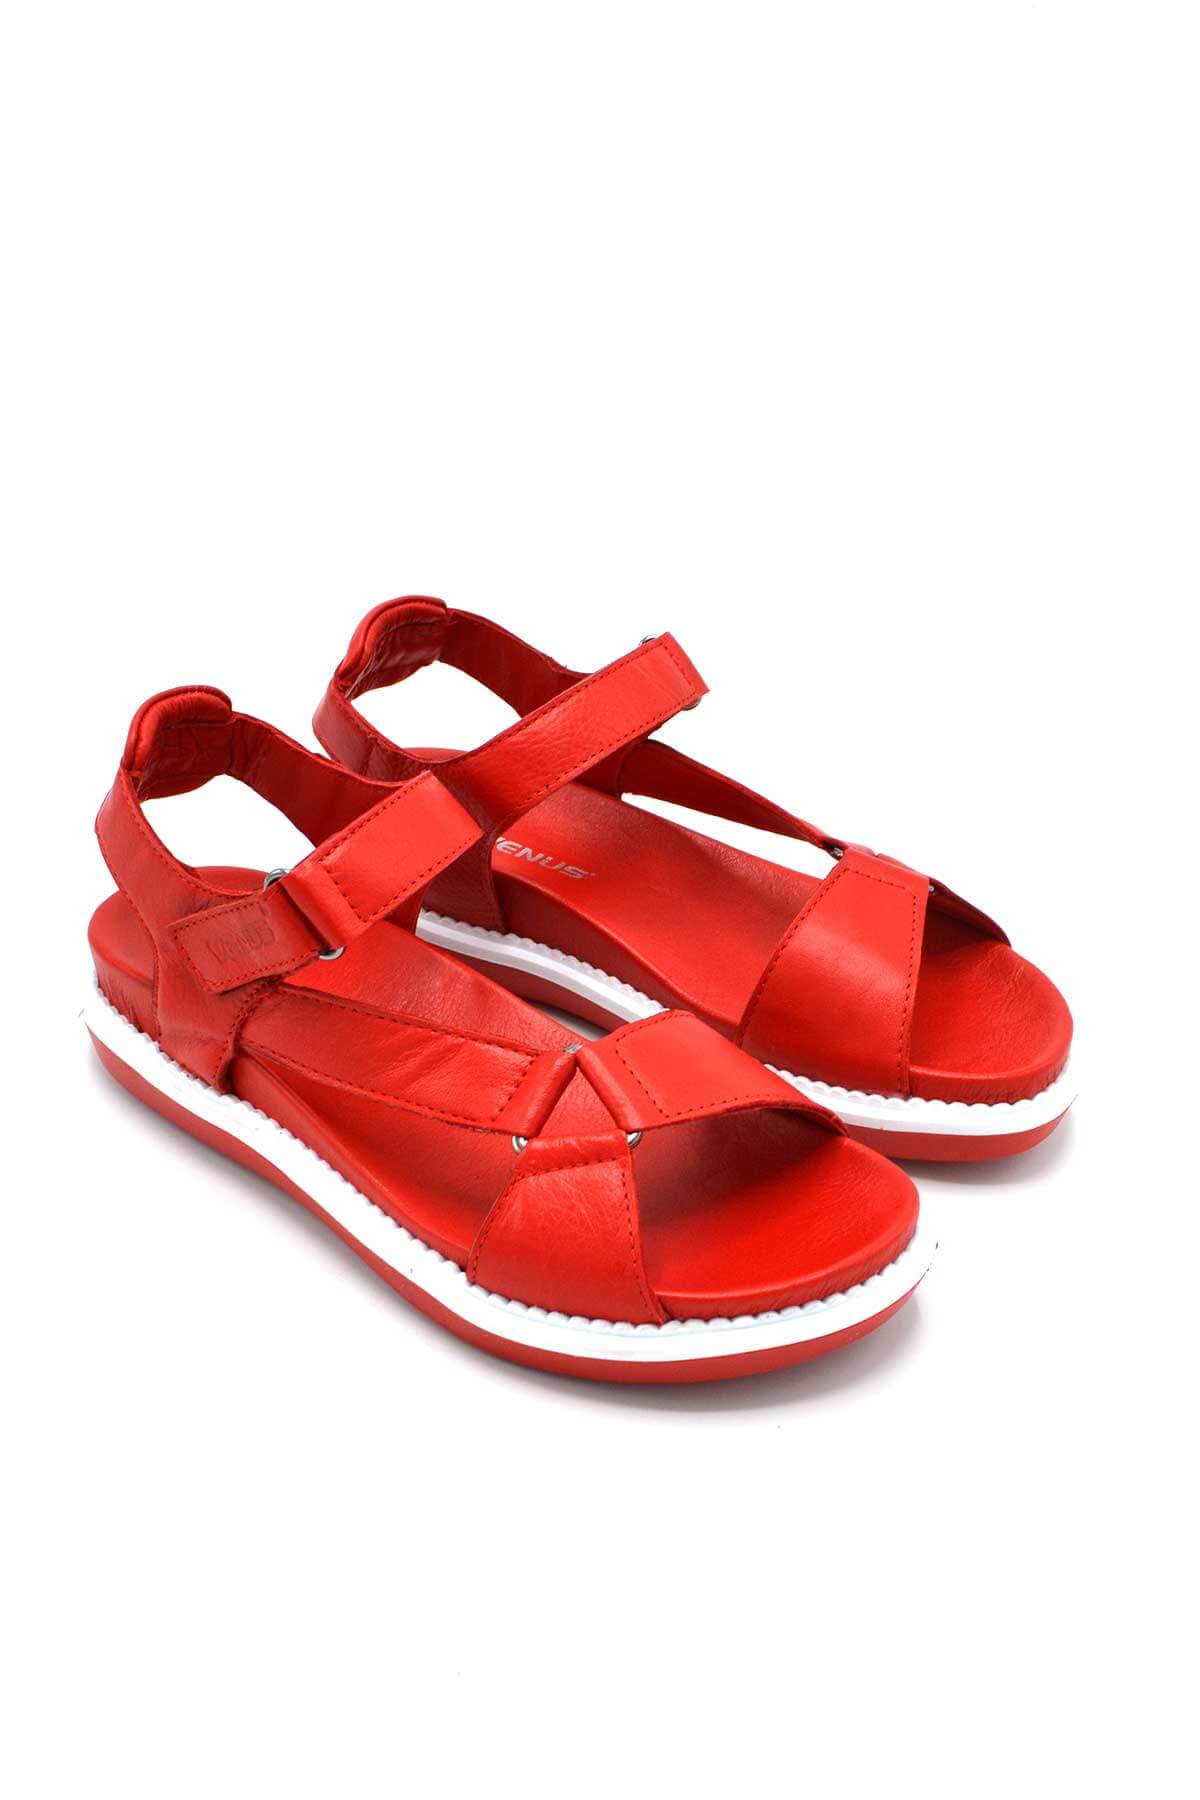 Kadın Comfort Deri Sandalet Kırmızı 202064Y